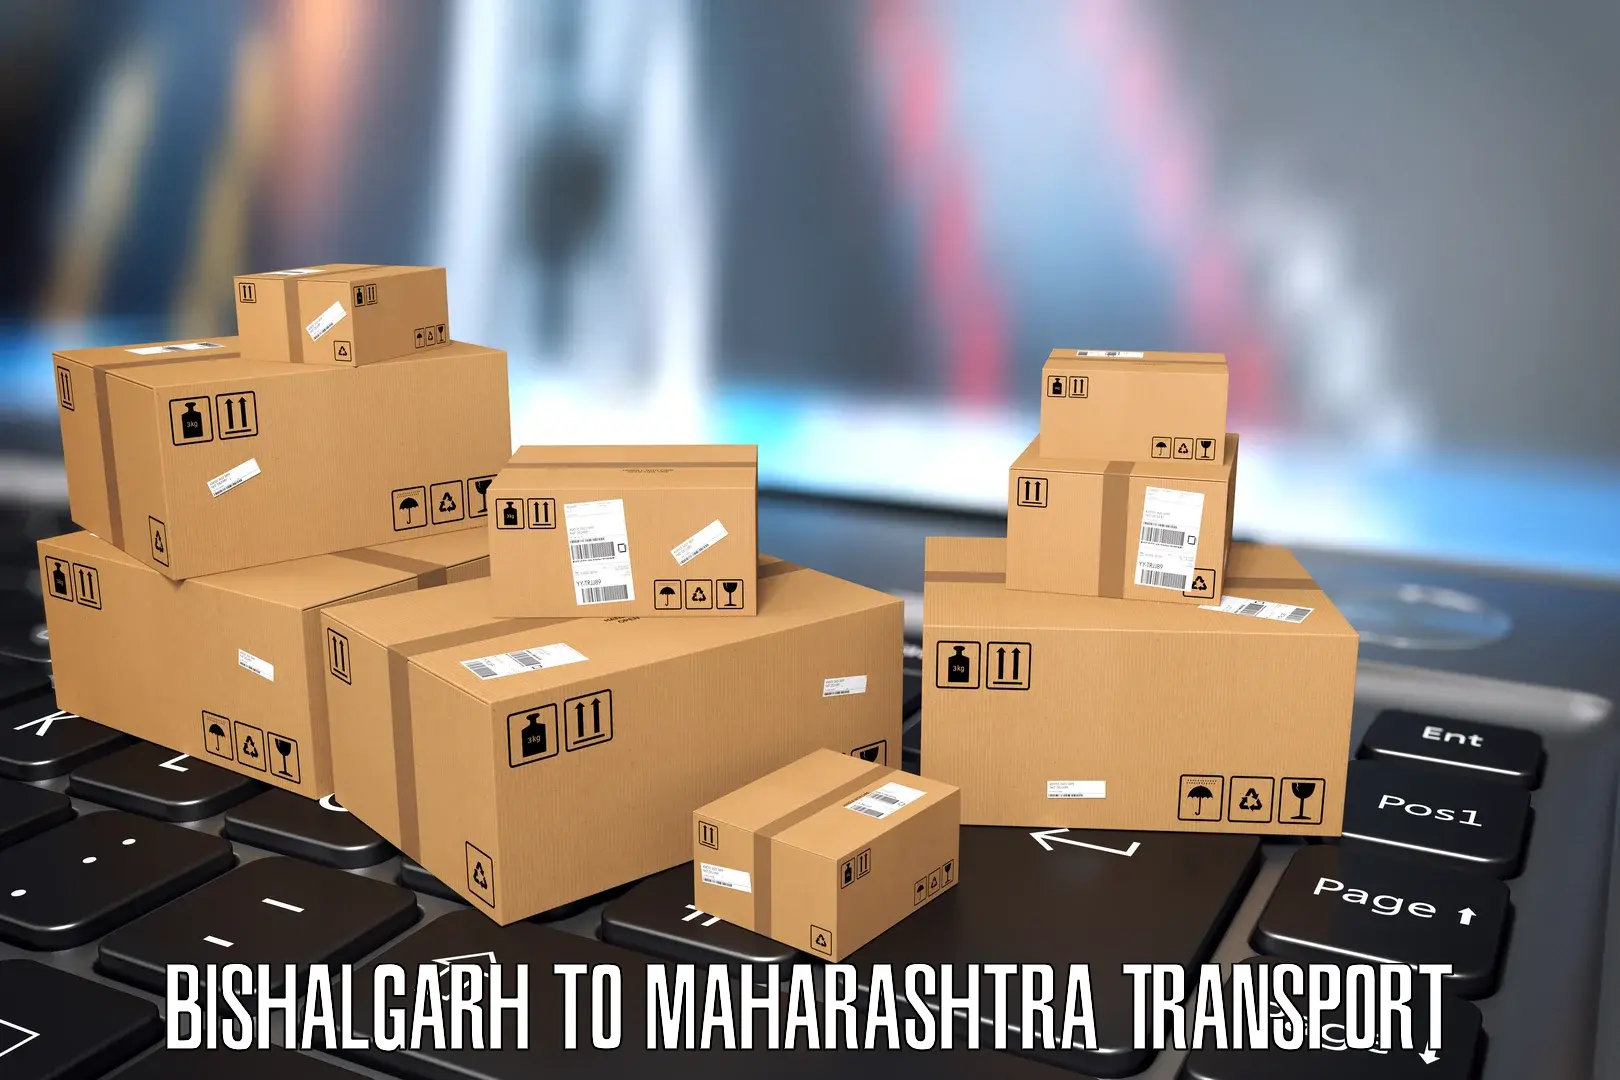 Interstate transport services Bishalgarh to Vasai